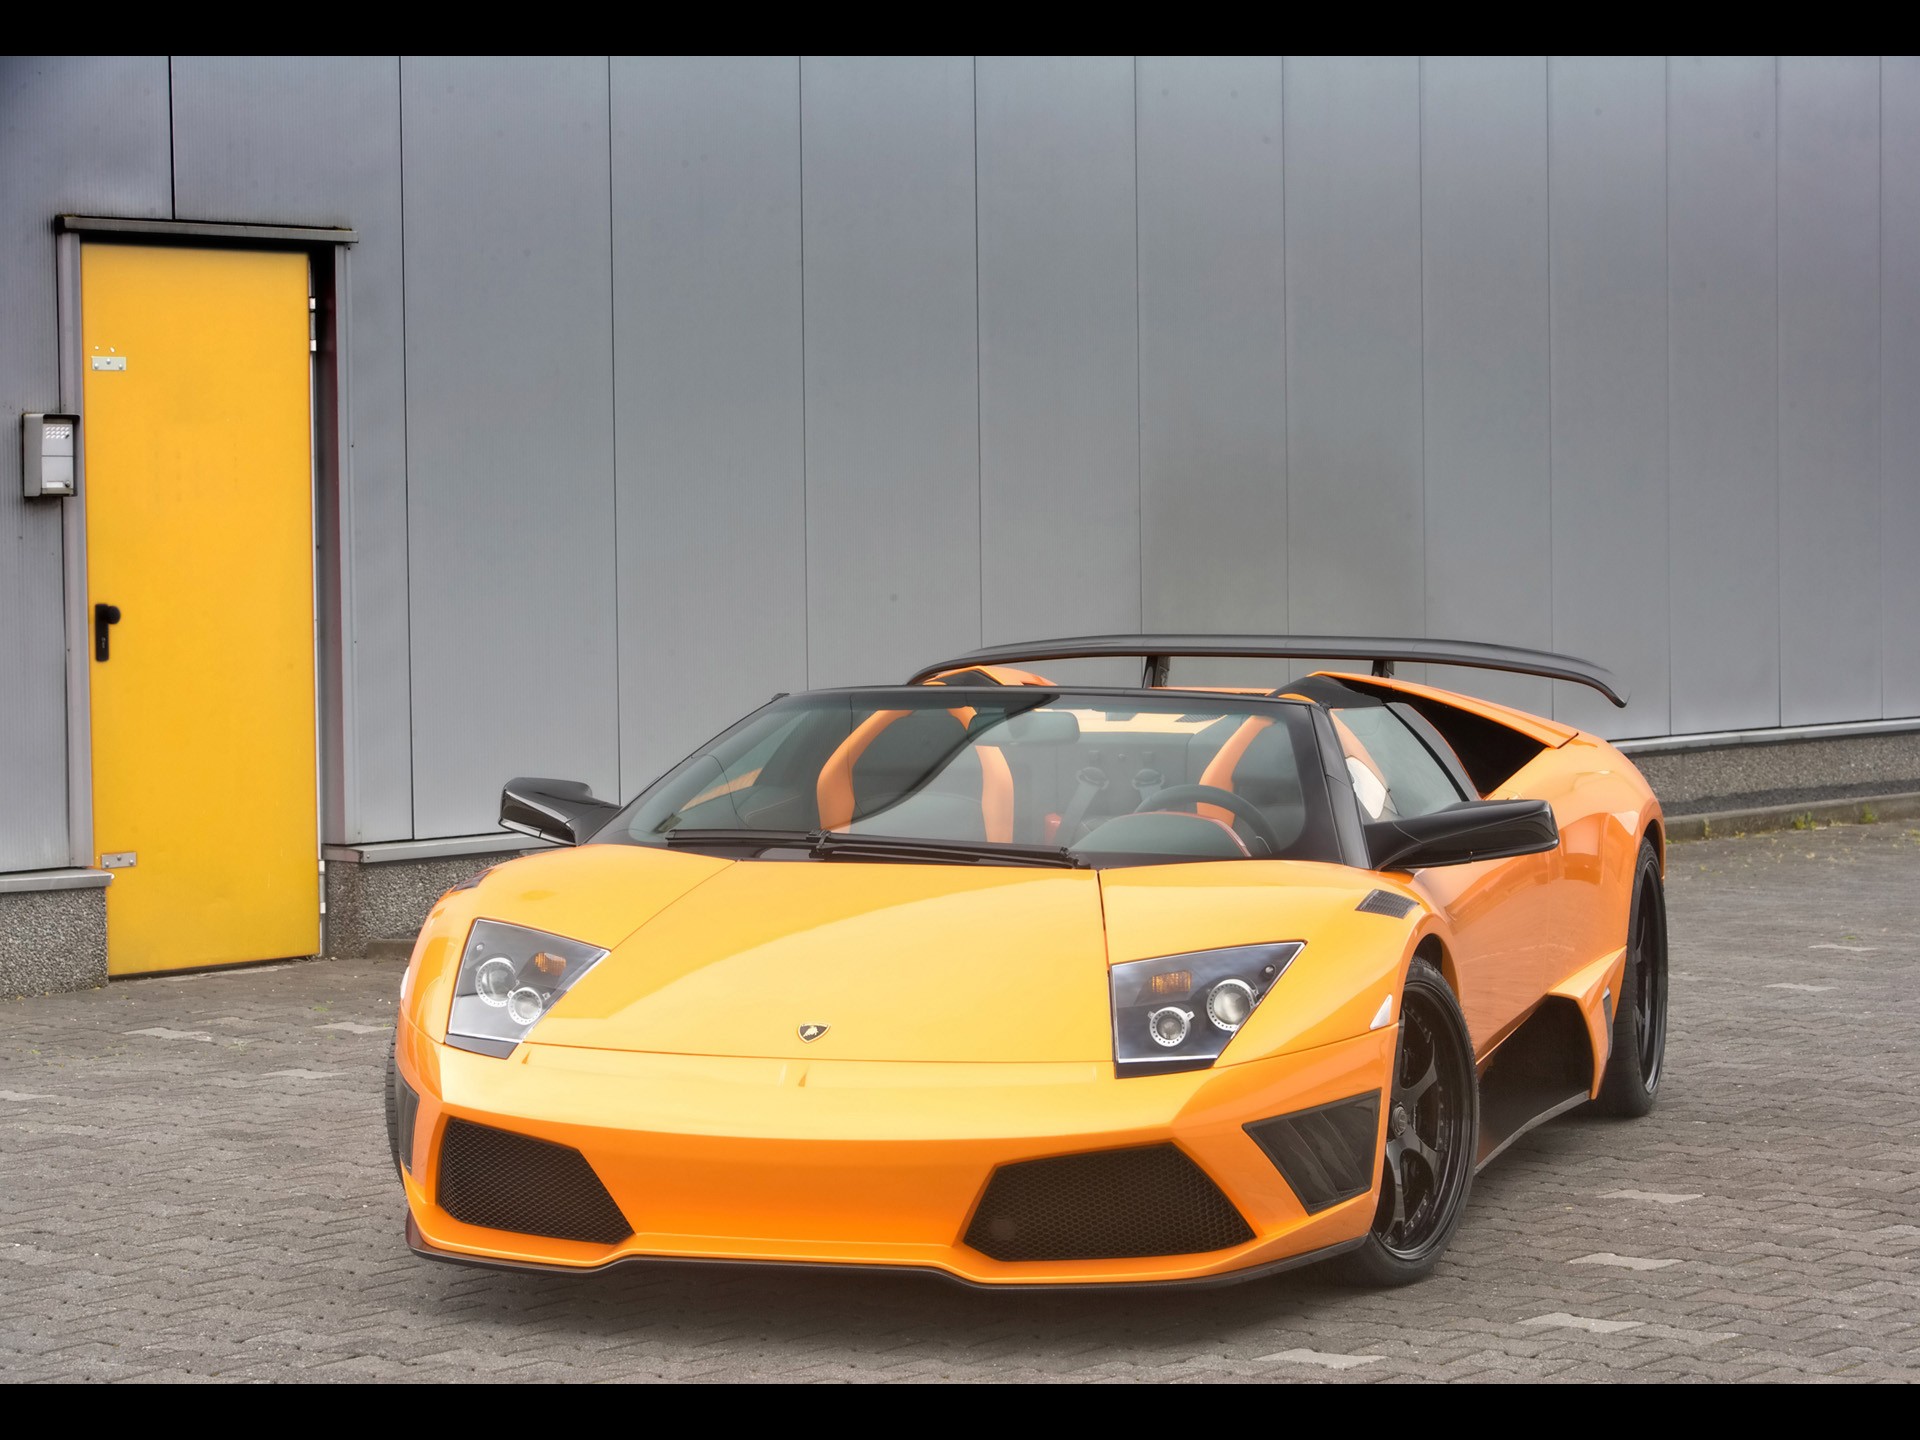 cars, Vehicles, Lamborghini, Murcielago, Orange, Cars, Italian, Cars Wallpaper